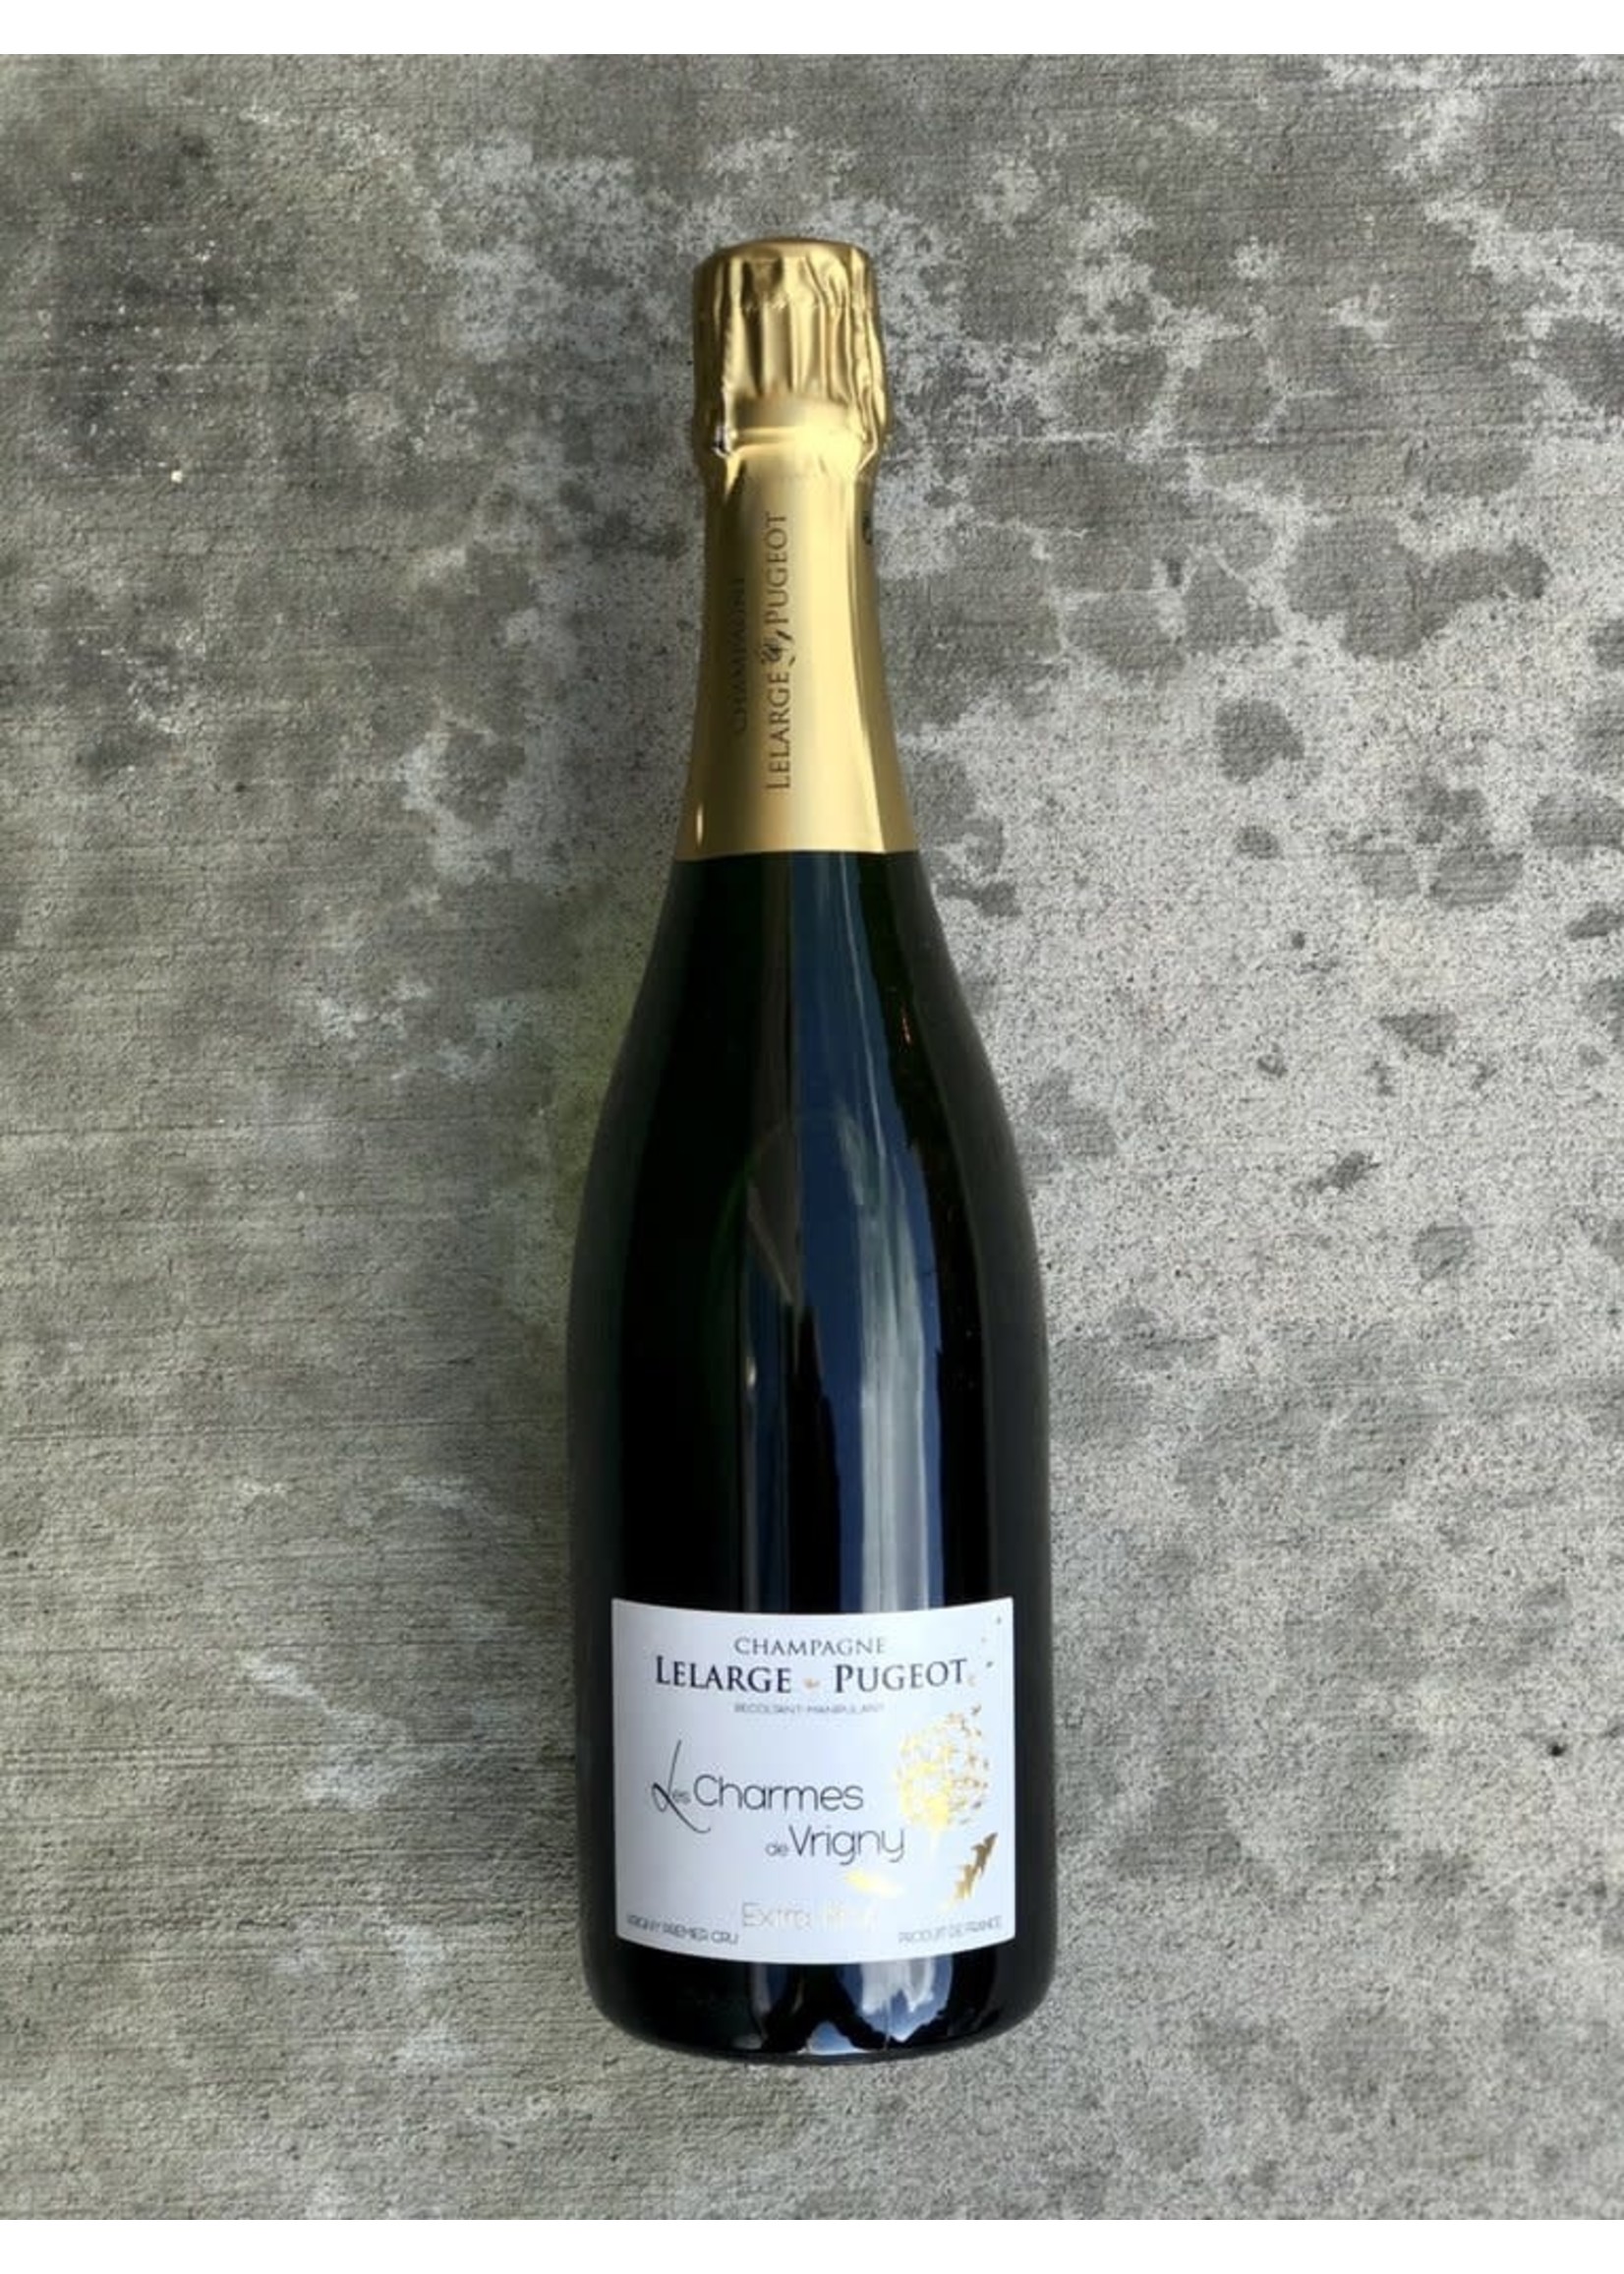 Lelarge-Pugeot French Sparking - Lelarge-Pugeot - Champagne Extra Brut Les Charmes de Vrigny